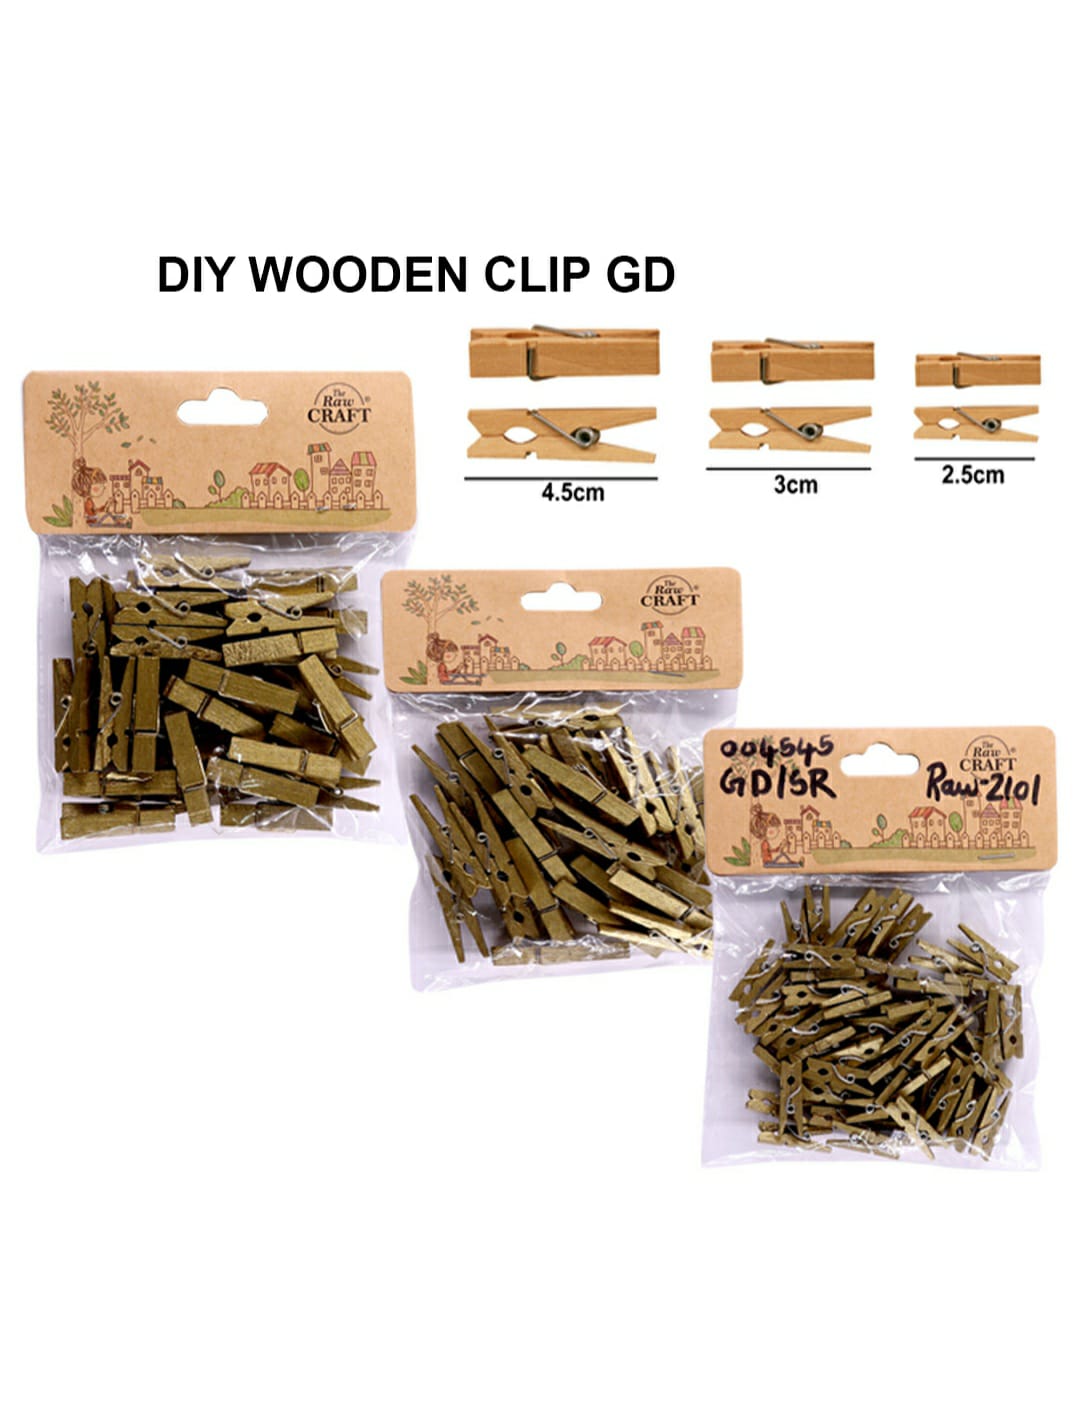 Diy Wooden Clip Gd/Sr Raw2101 | INKARTO